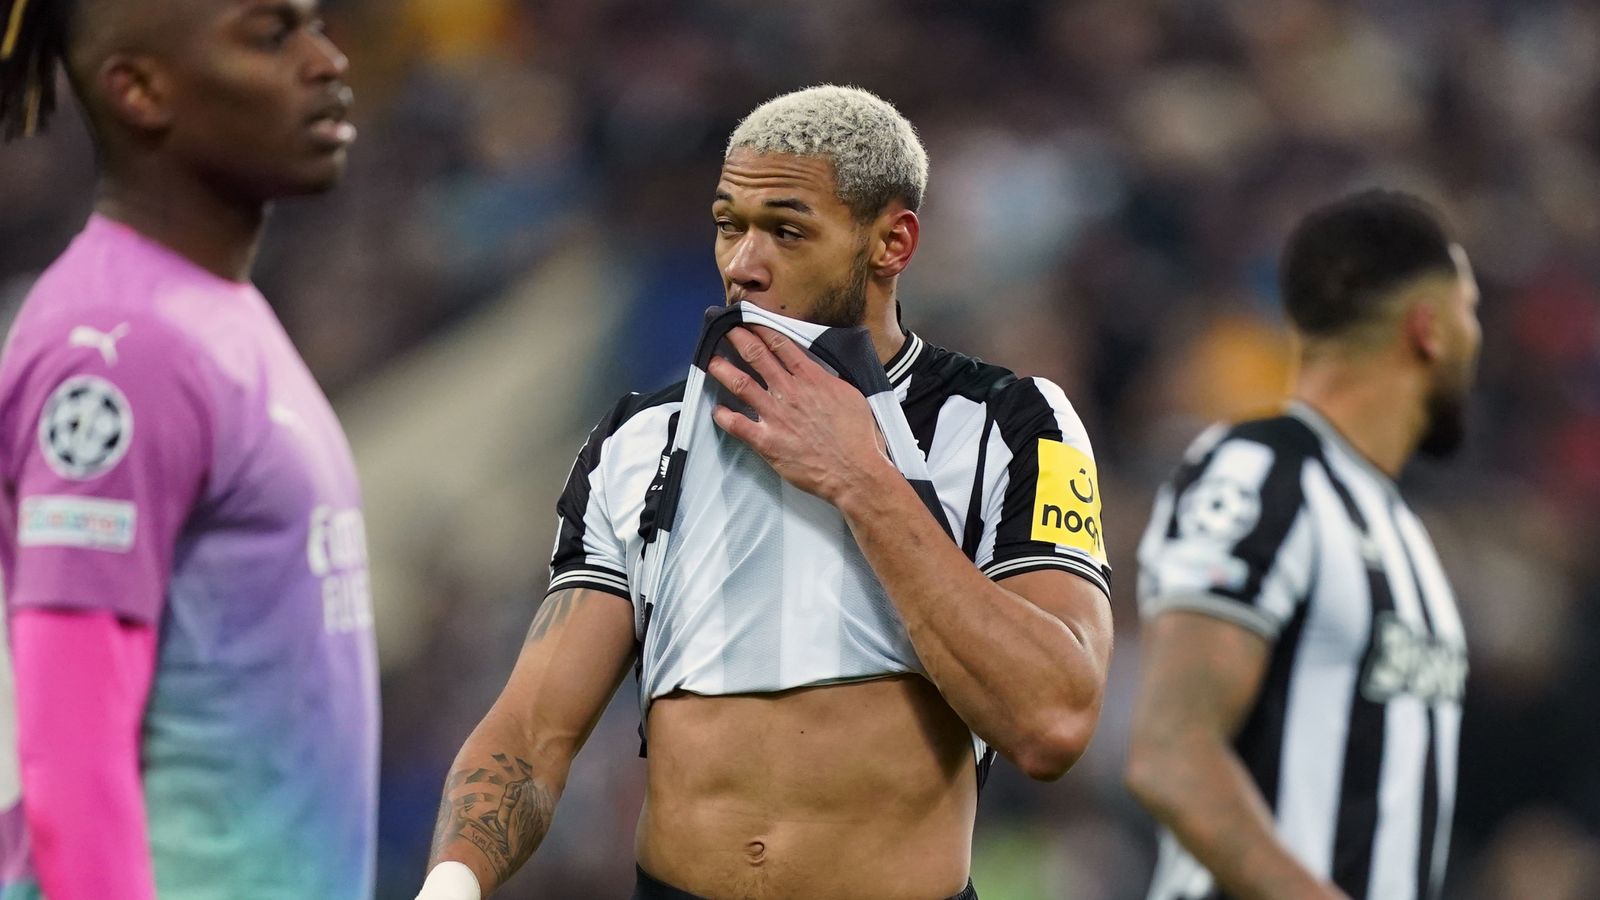 Milan dump Newcastle out of Europe as CL return ends in heartbreak